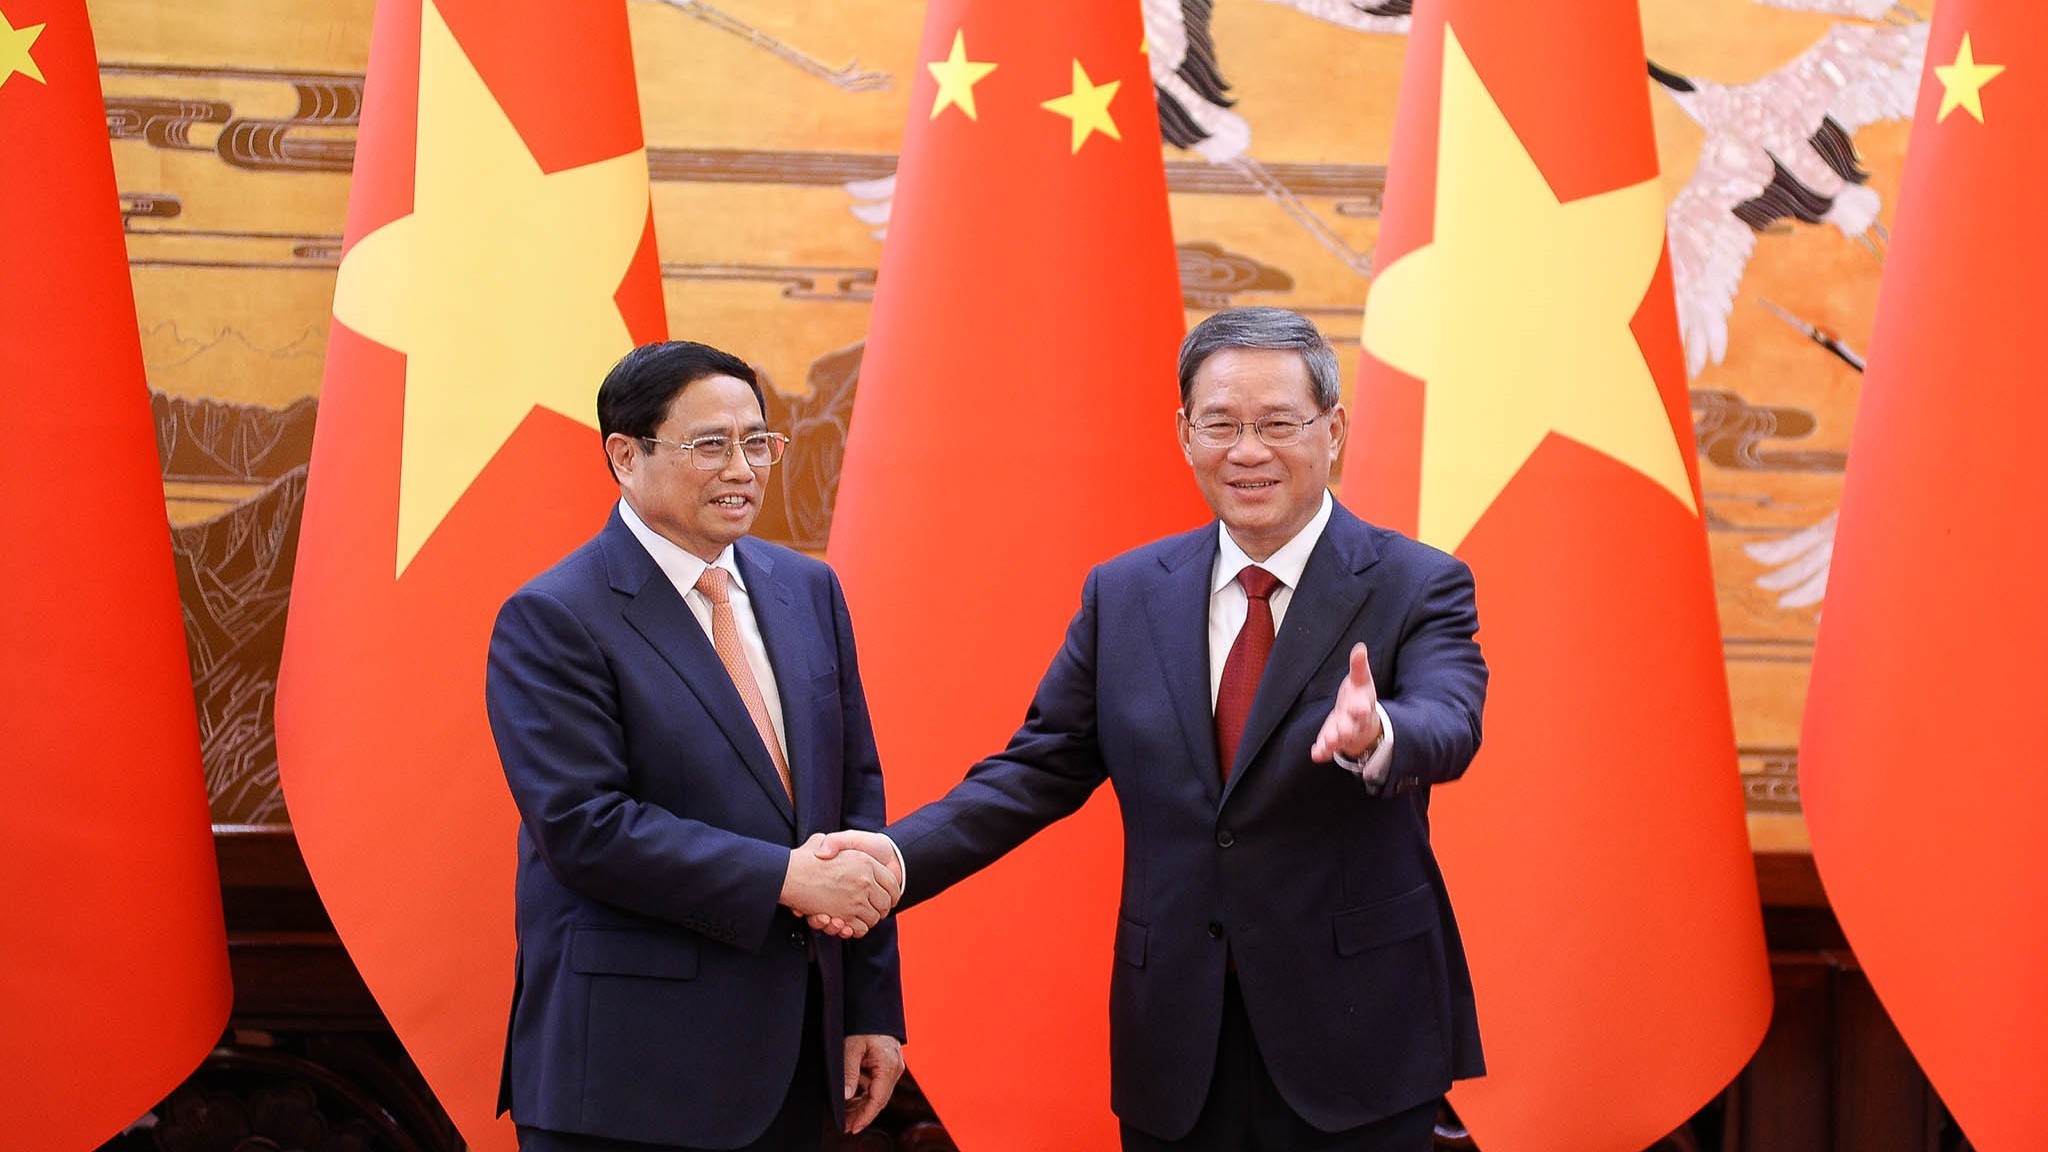 Trung Quốc khuyến khích các doanh nghiệp lớn đầu tư vào các lĩnh vực phù hợp với nhu cầu, chiến lược phát triển bền vững của Việt Nam